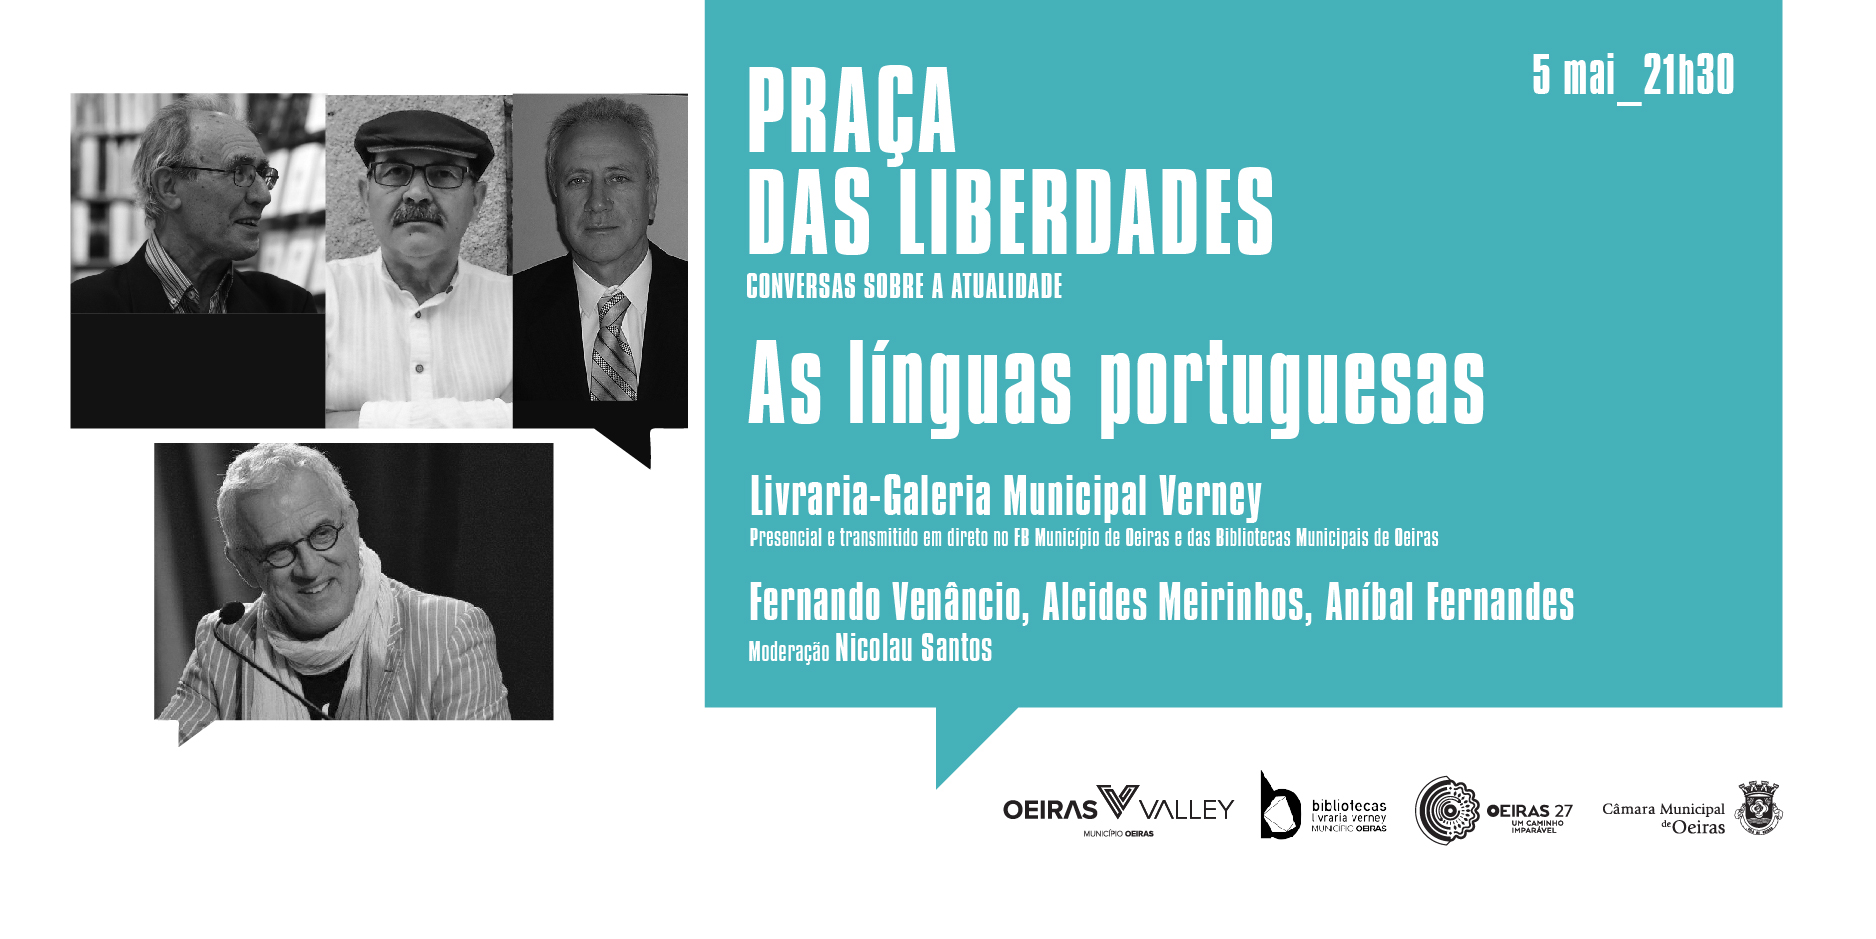 Praça das Liberdades - As línguas portuguesas